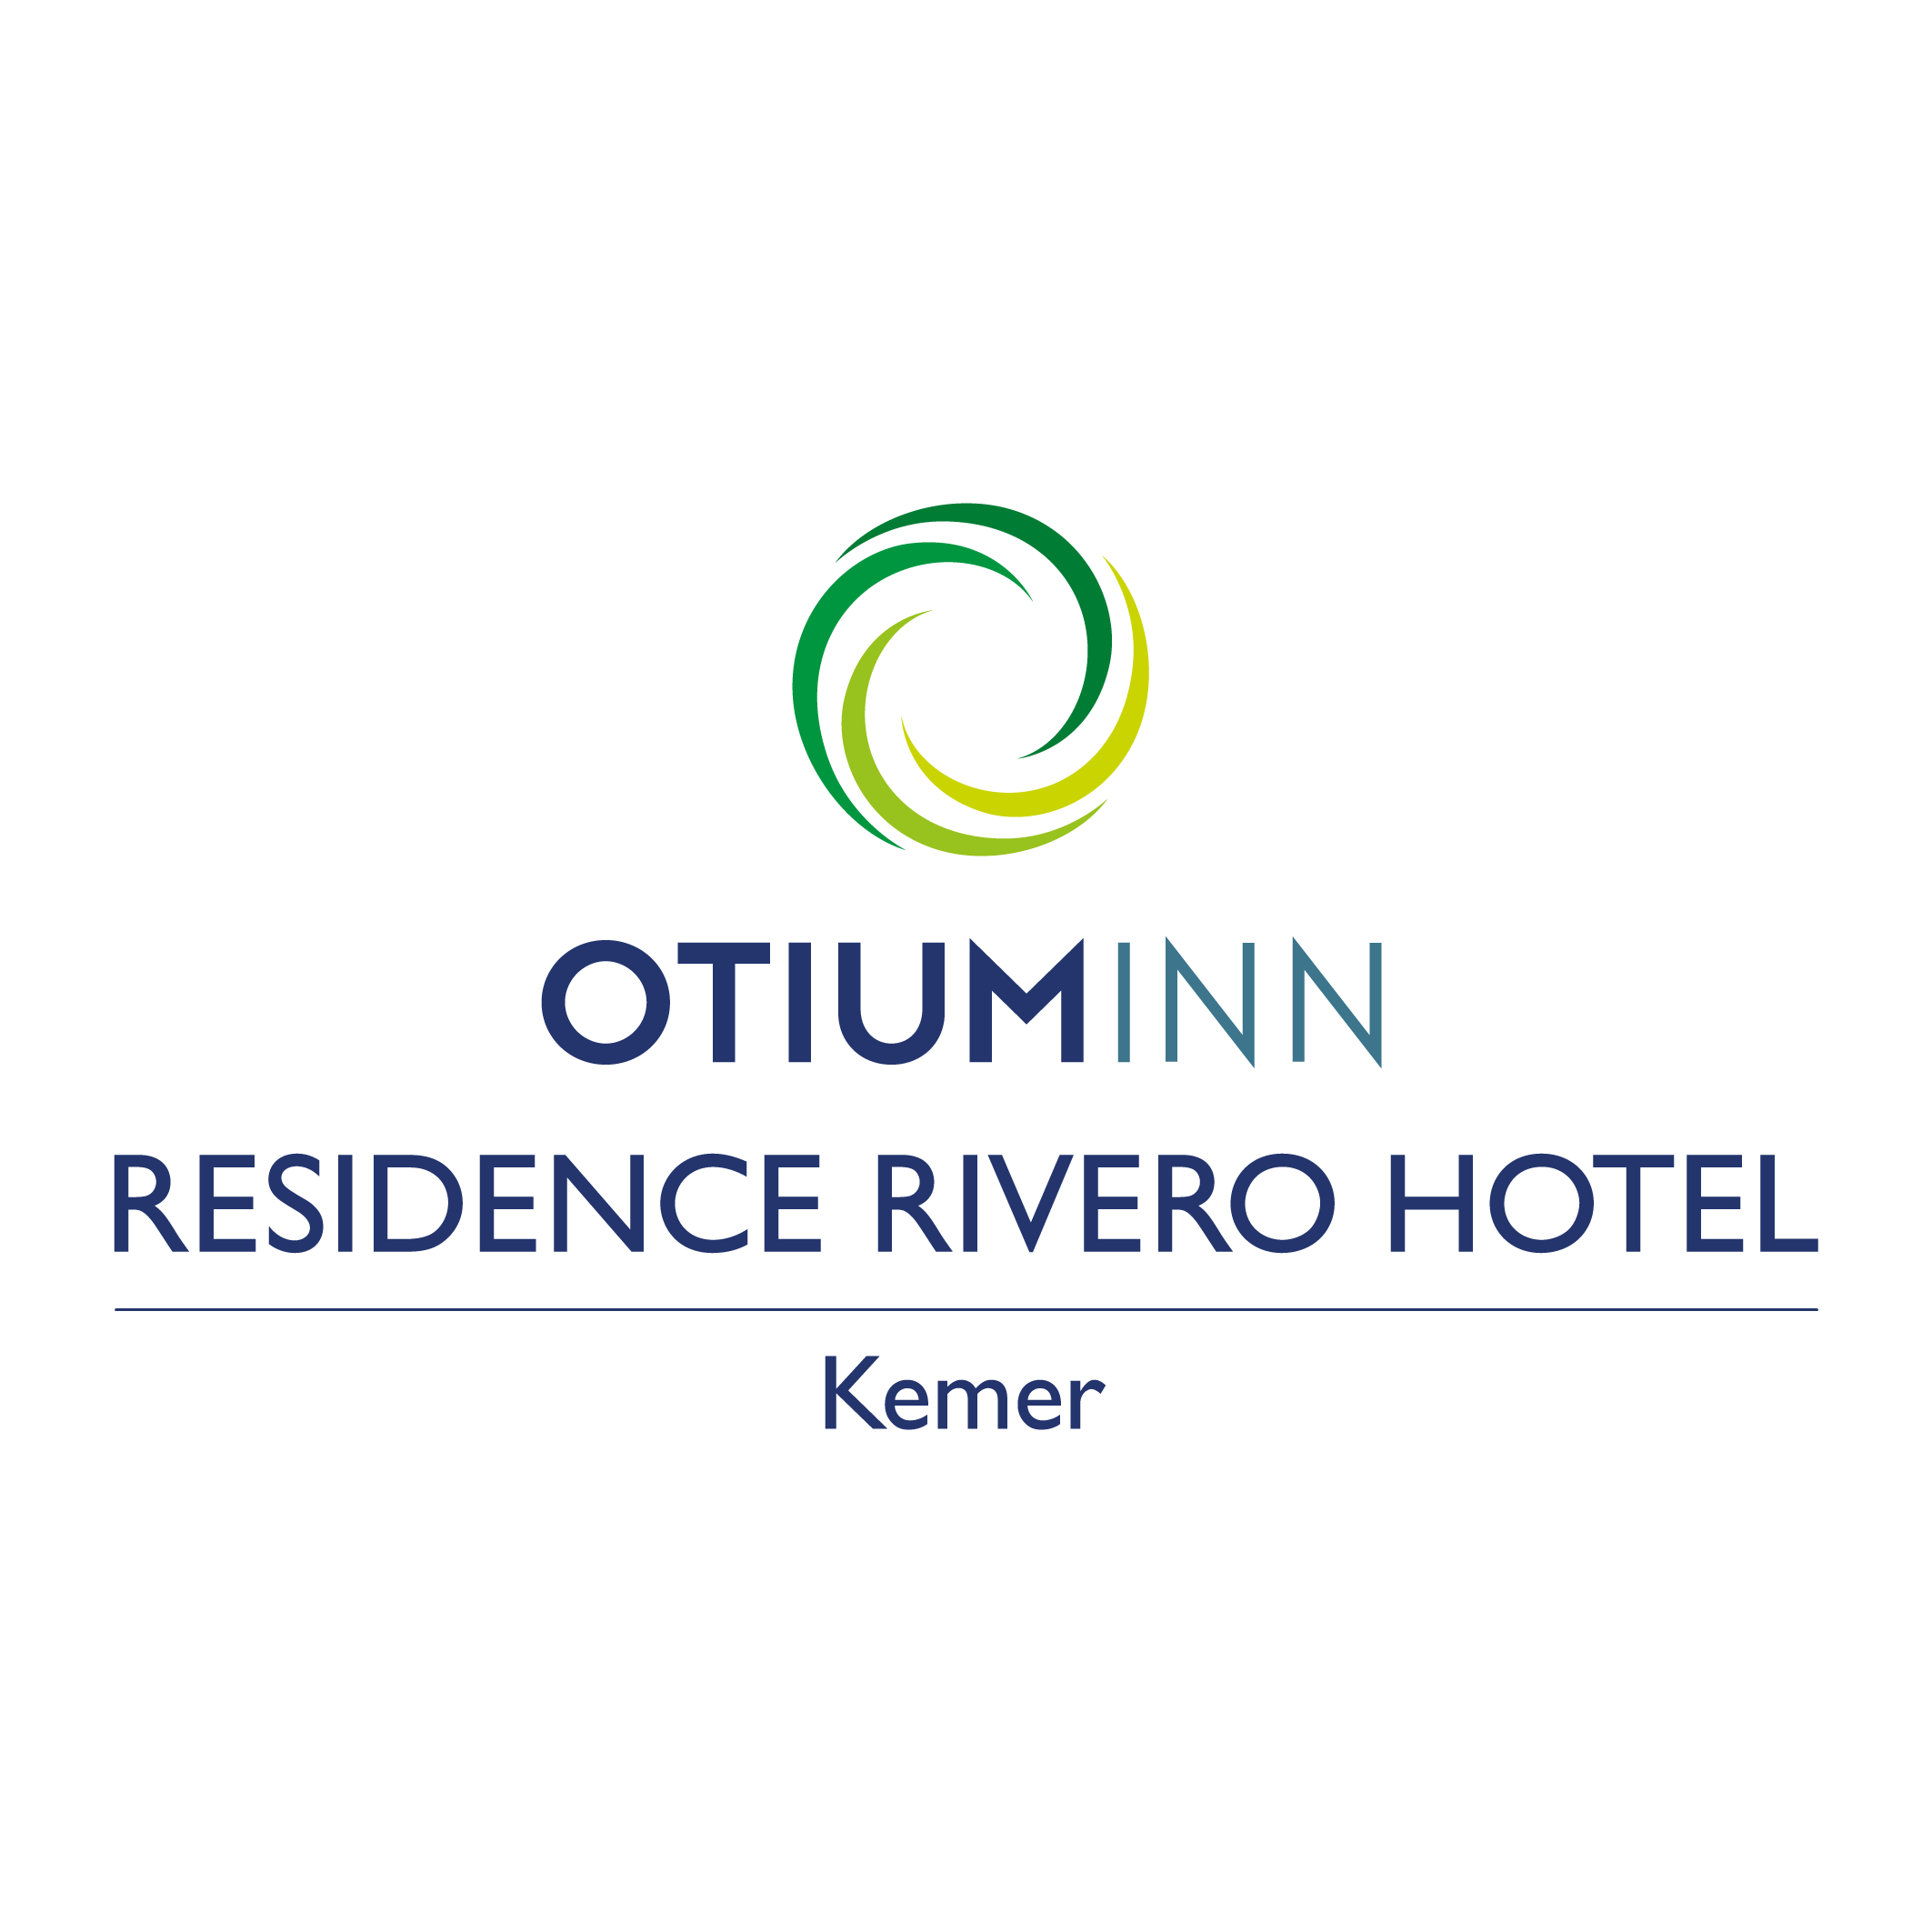 14 -  OTIUM INN RESIDENCE RIVERO HOTEL